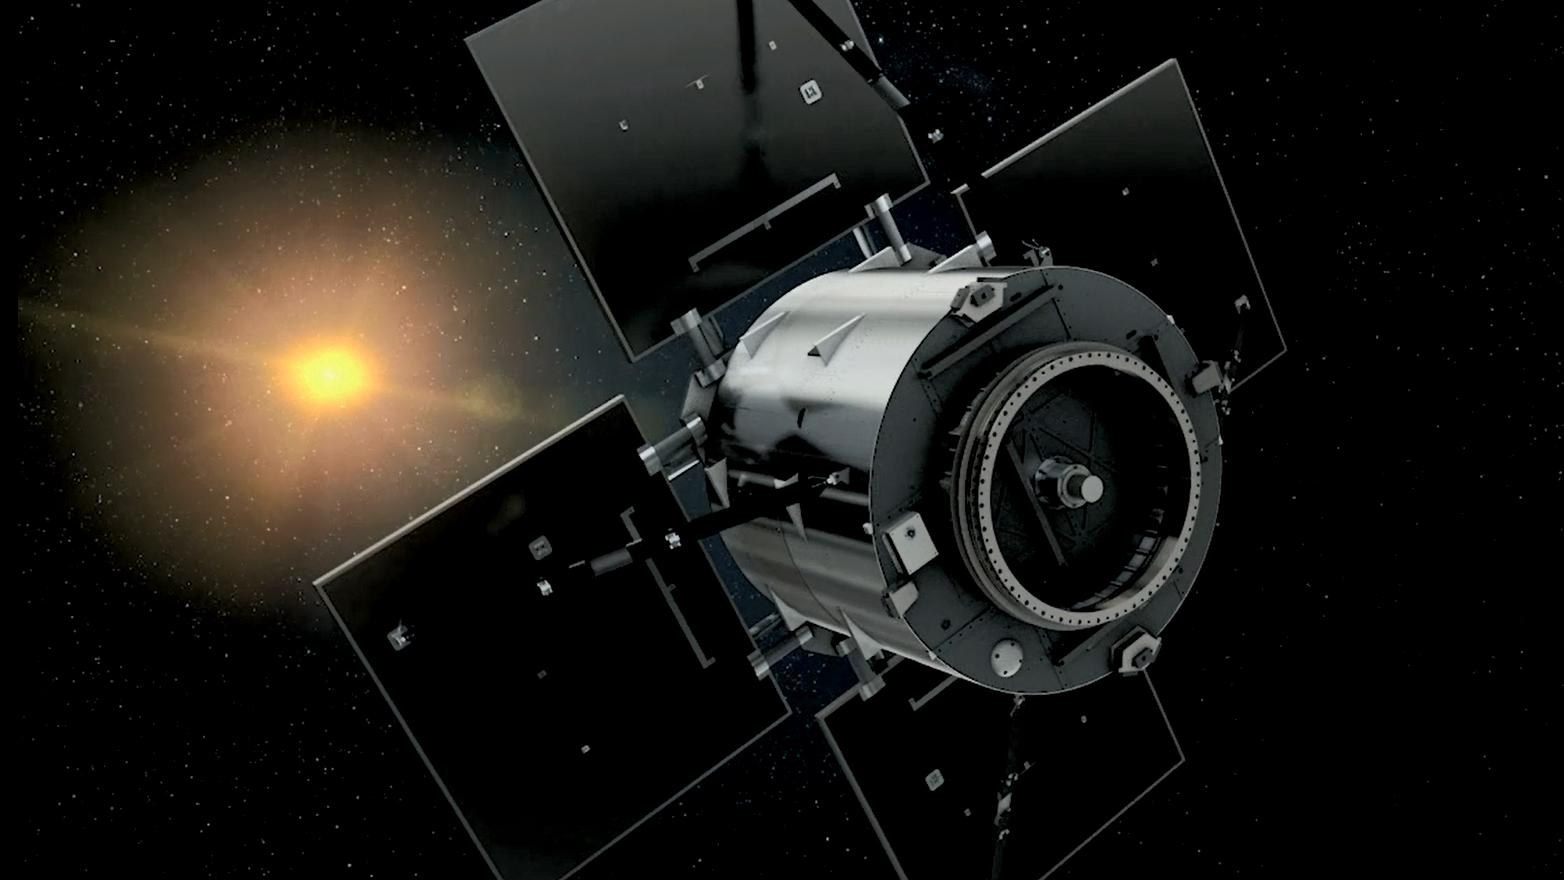 The Eu:CROPIS satellite